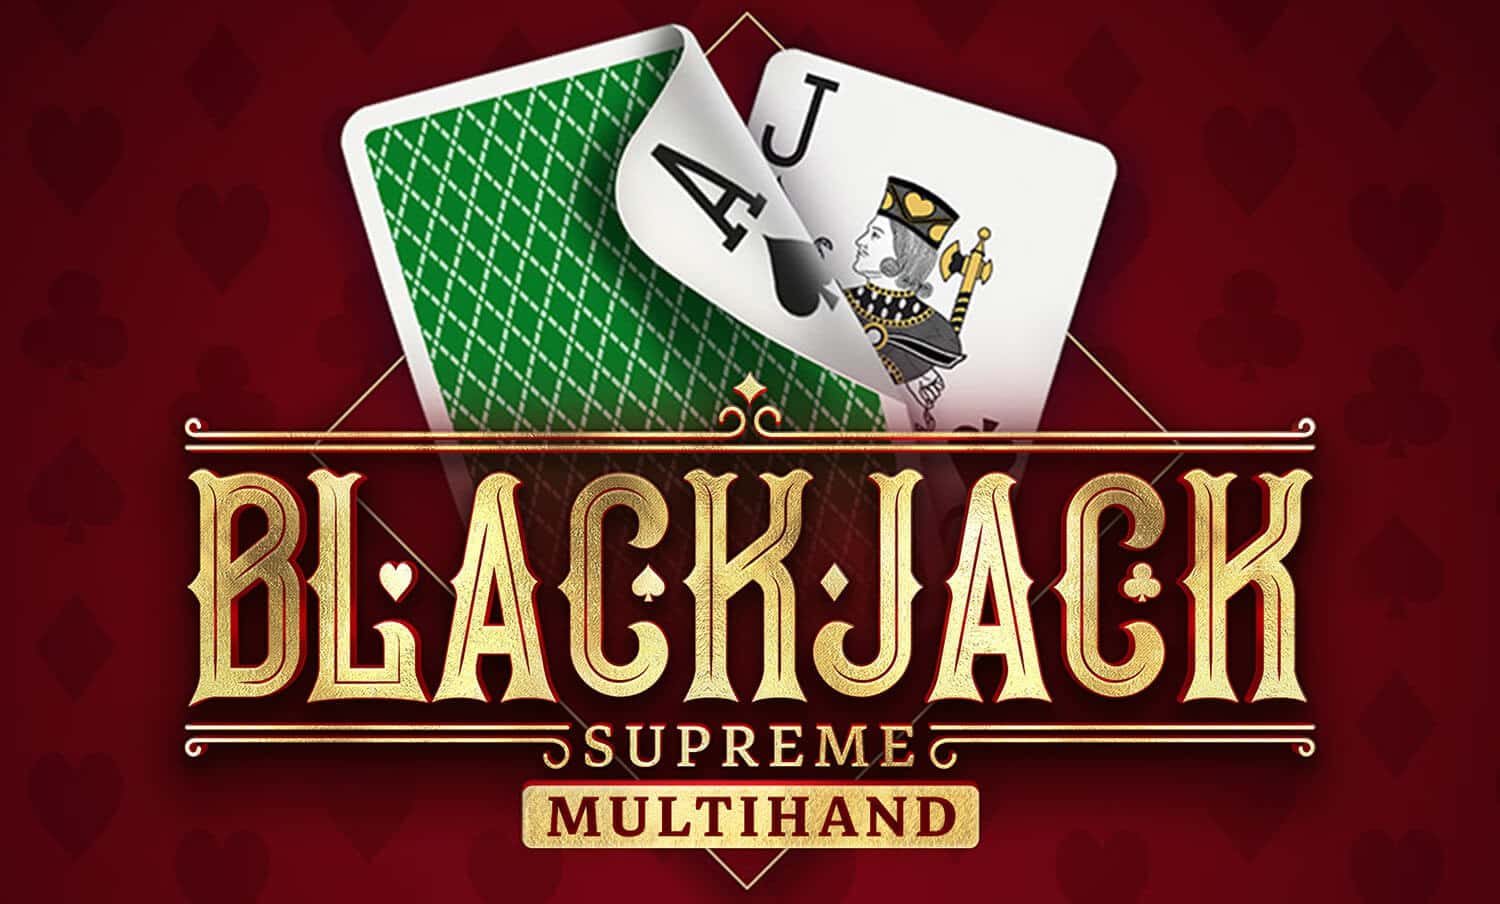 Blackjack Supreme Multi Hand